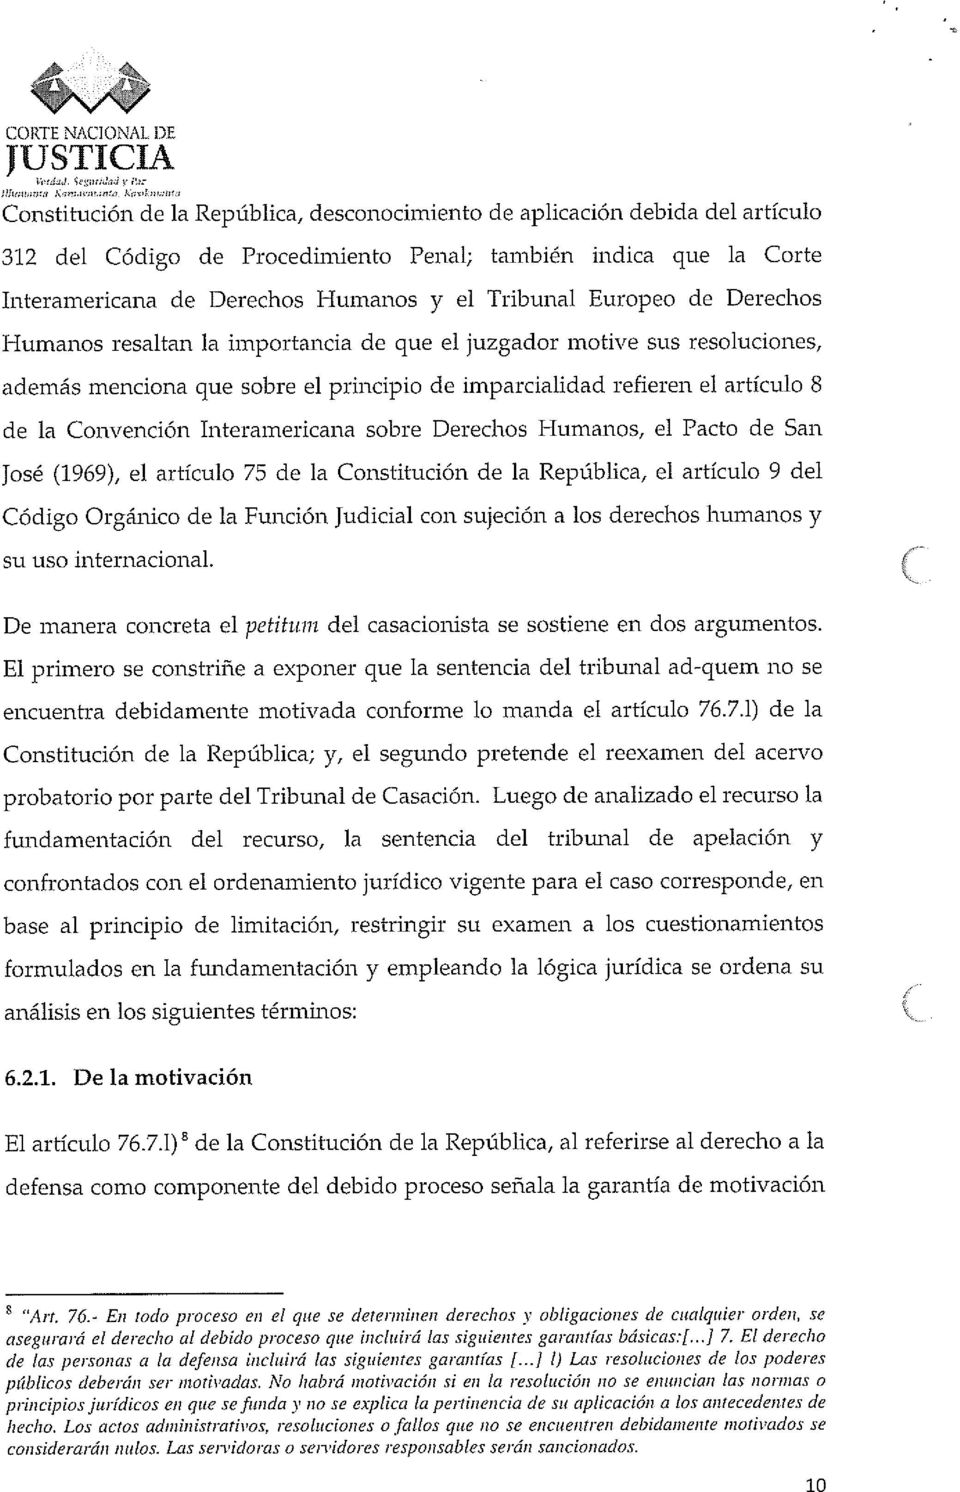 artículo 8 de la Convención Interamericana sobre Derechos Humanos, el Pacto de San José (1969), el artículo 75 de la Constitución de la República, el artículo 9 del Código Orgánico de la Función